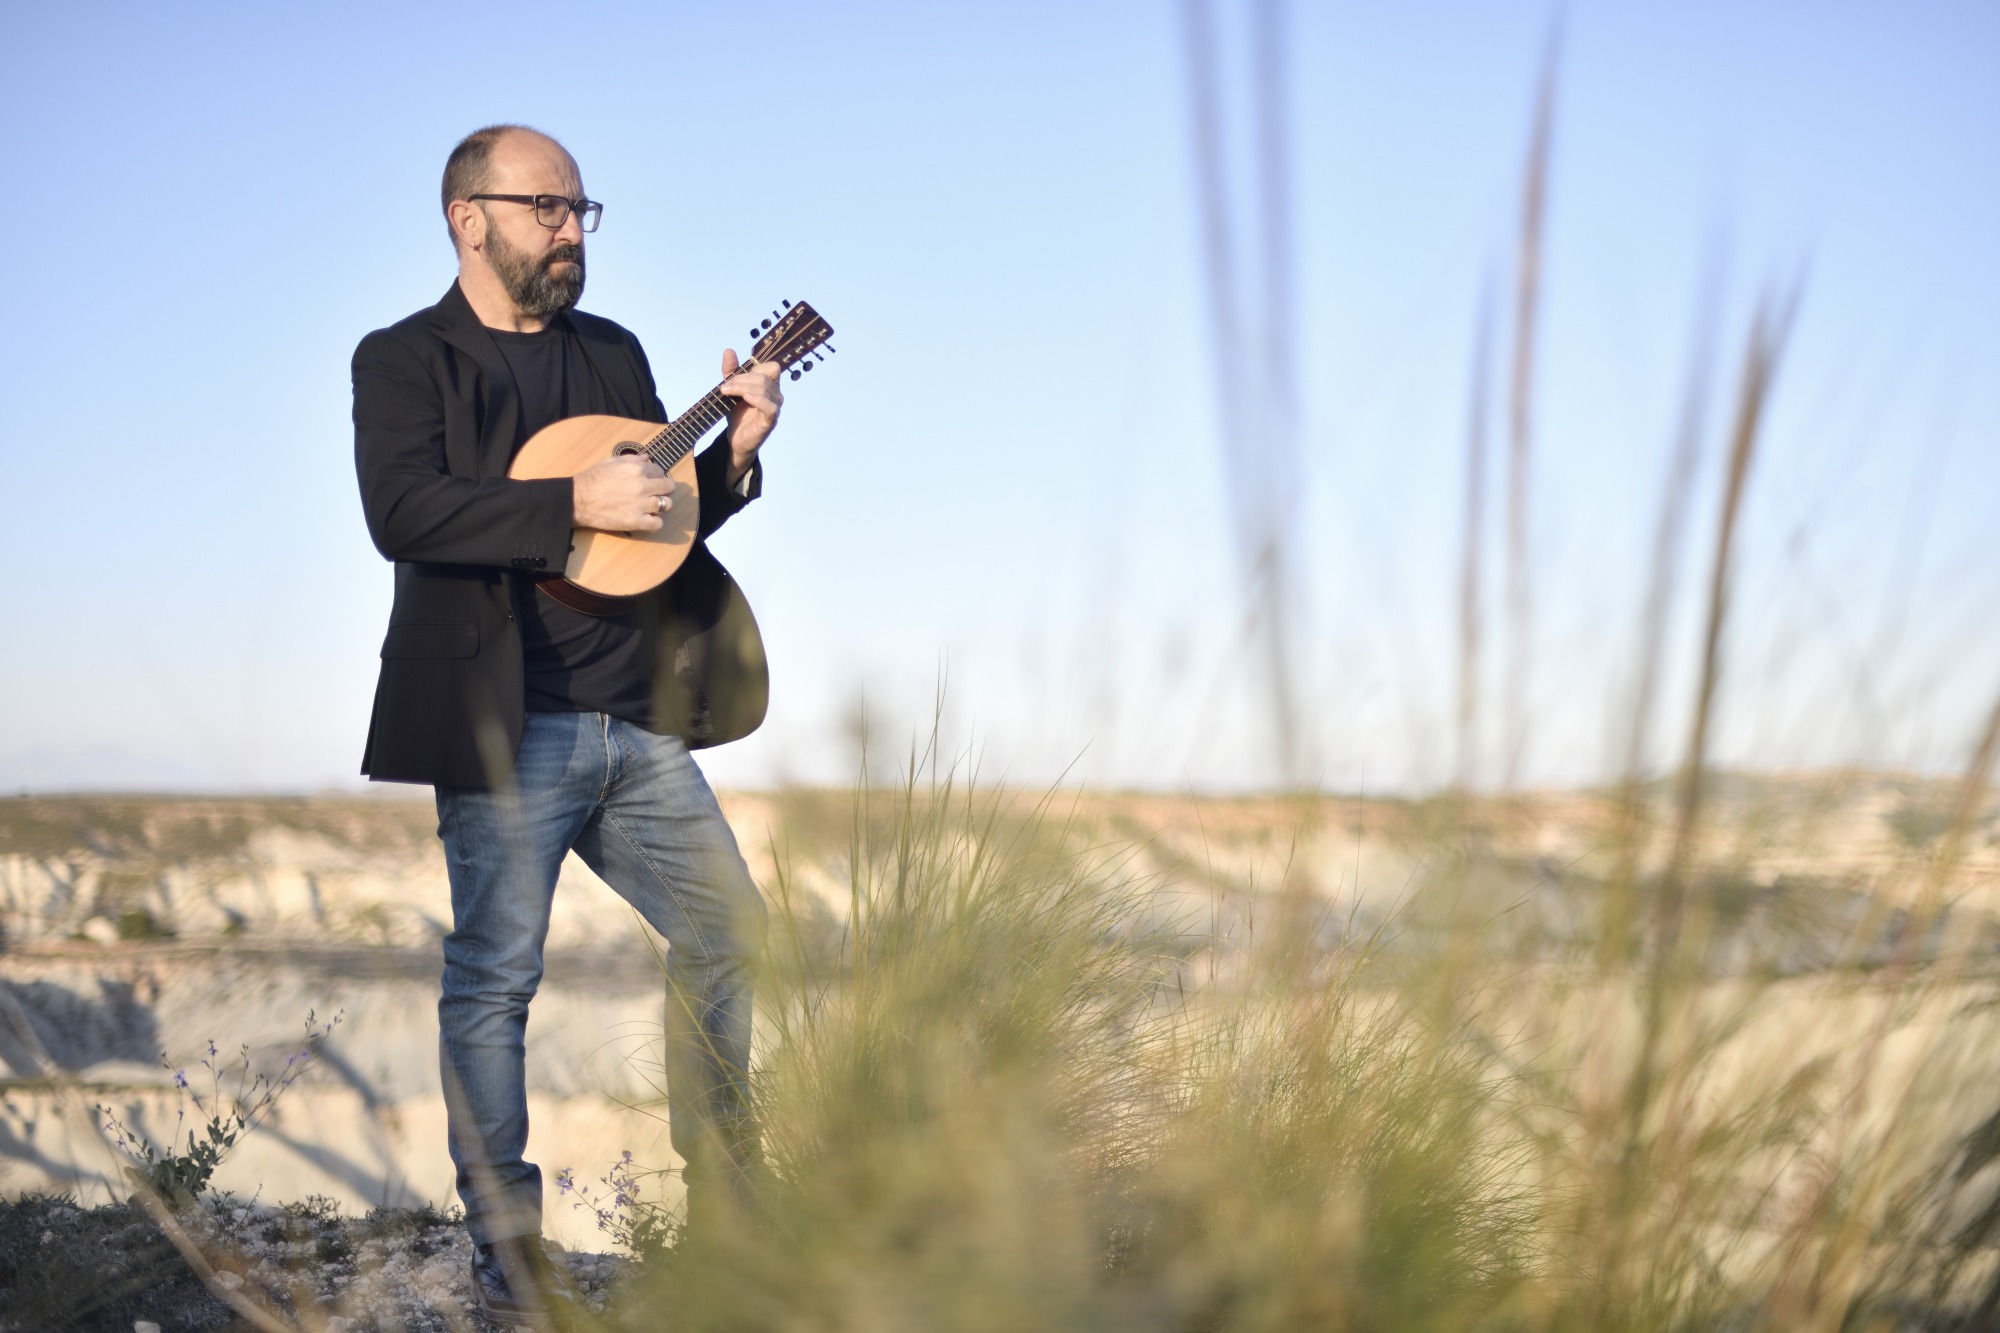 ENTREVISTA | Juan José Robles: “En mis trabajos en solitario lo que hago es recrearme en melodías tradicionales y disfrutar con ellas aportándole nuevos instrumentos y ritmos”